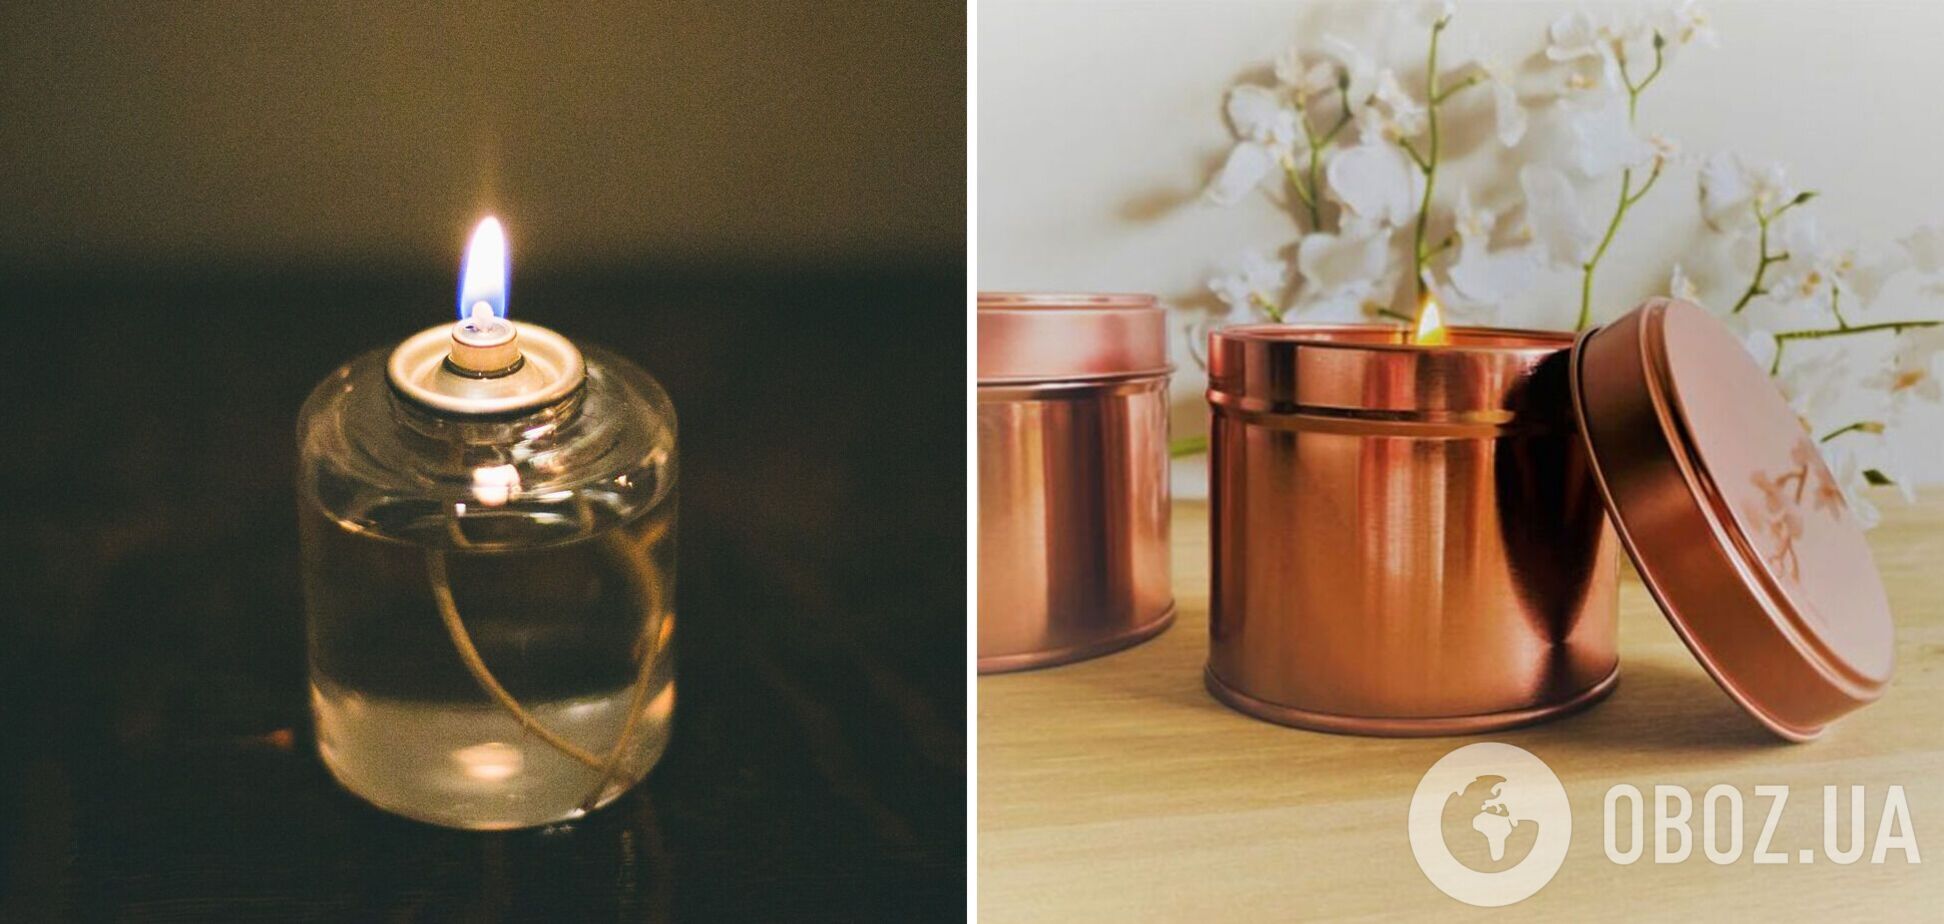 Как сделать, чтобы свеча горела сутки: доступный лайфхак